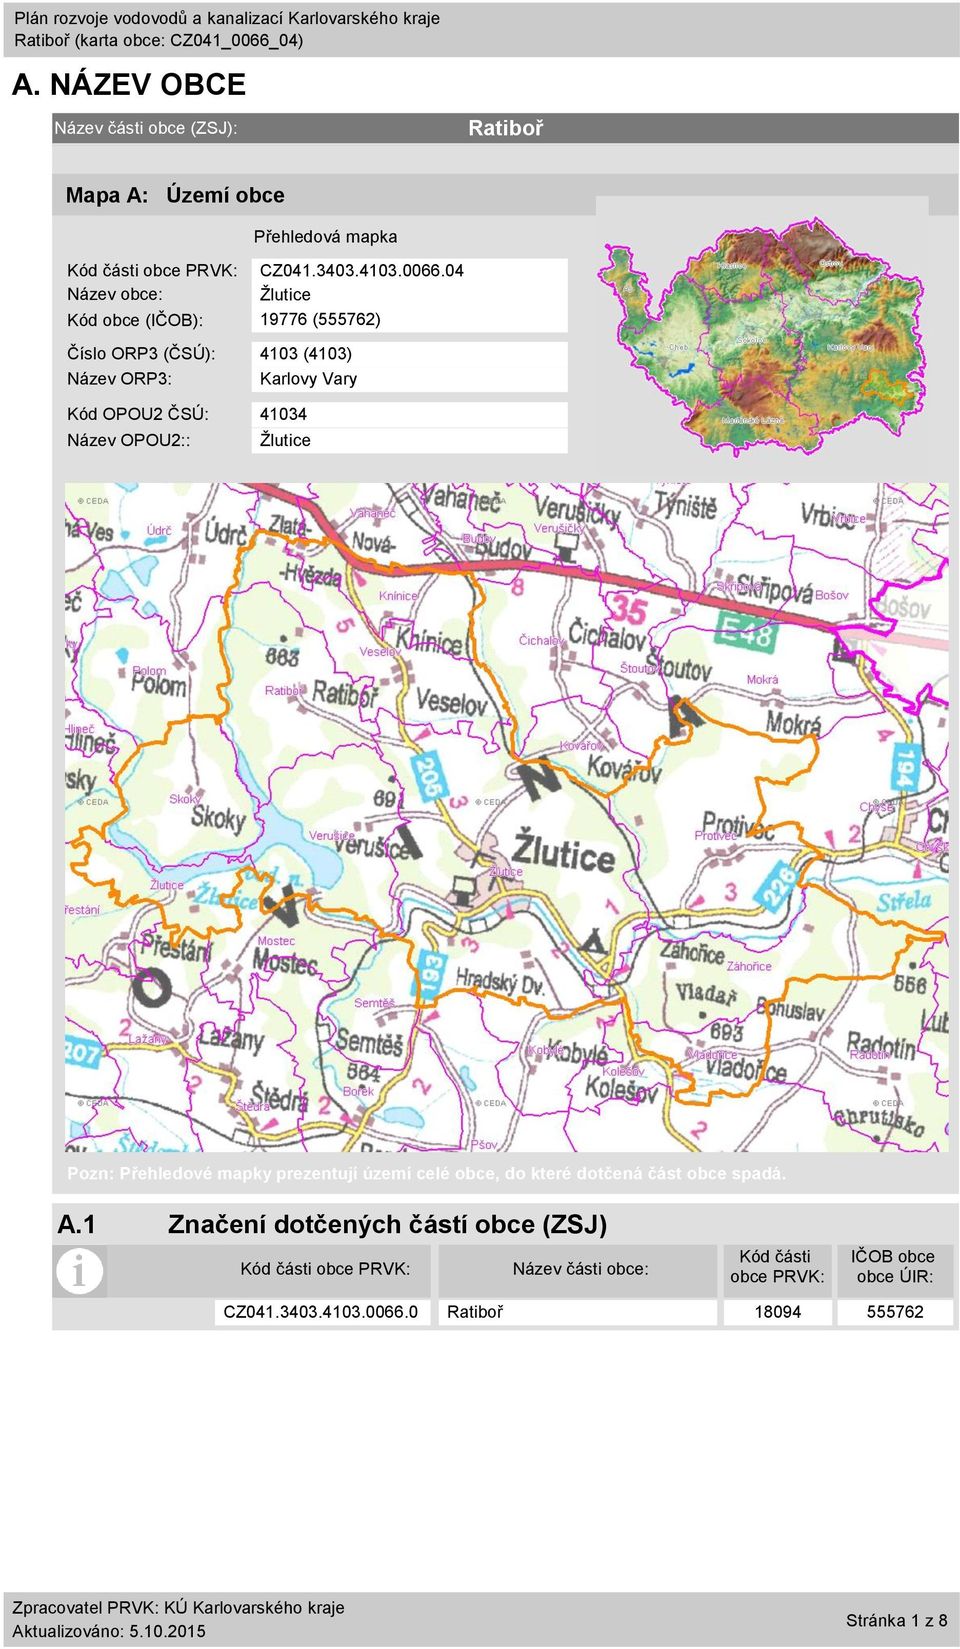 Název OPOU2:: Žlutice Pozn: Přehledové mapky prezentují území celé obce, do které dotčená část obce spadá. A.